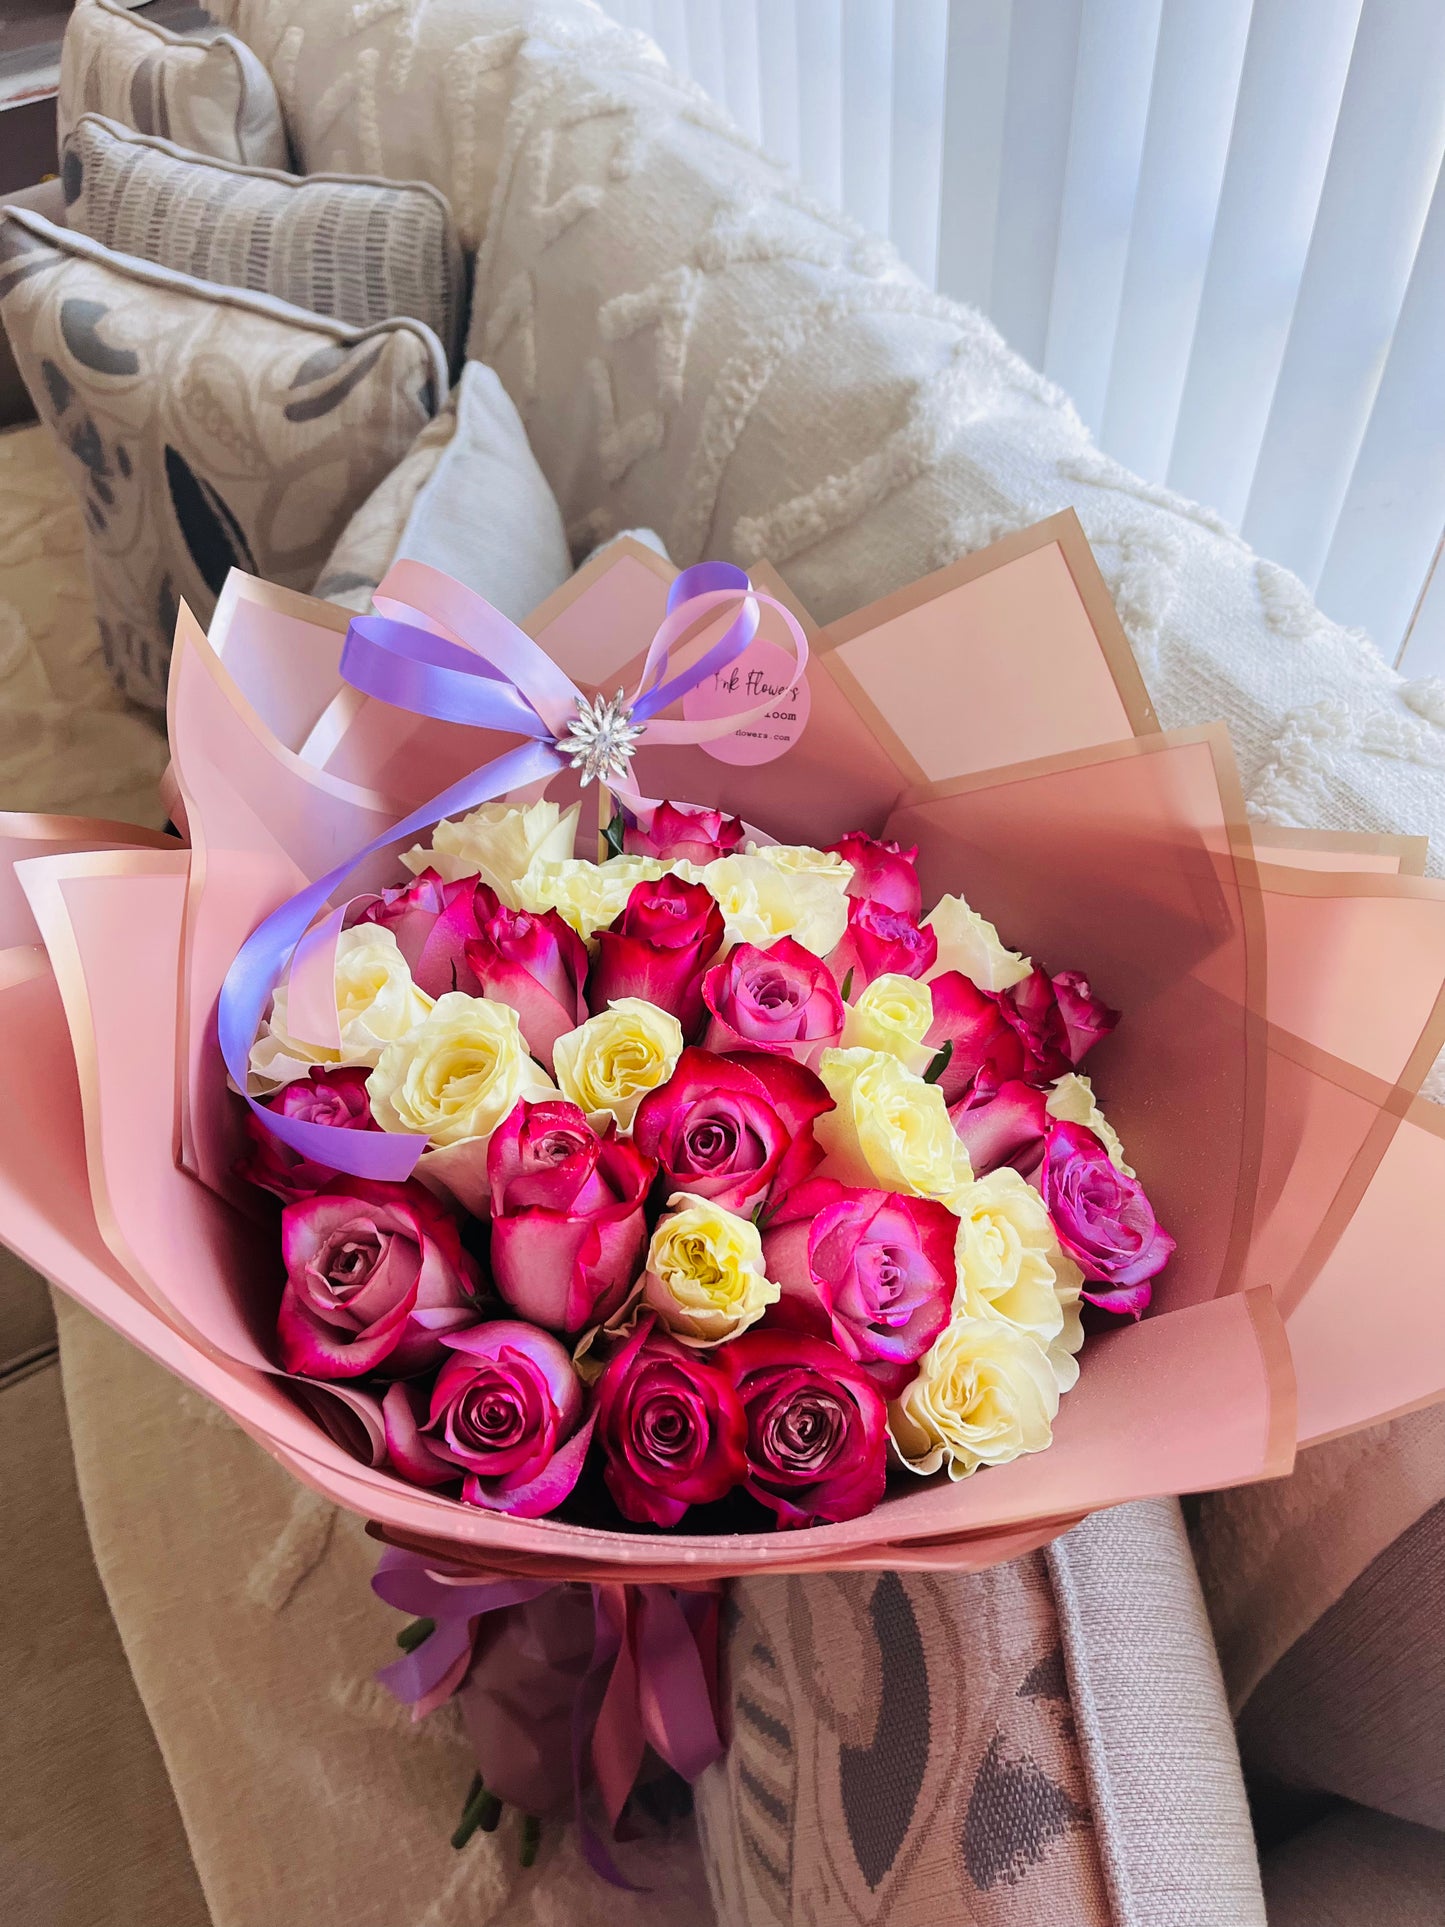 25 White and Purple Premium Roses Bouquet